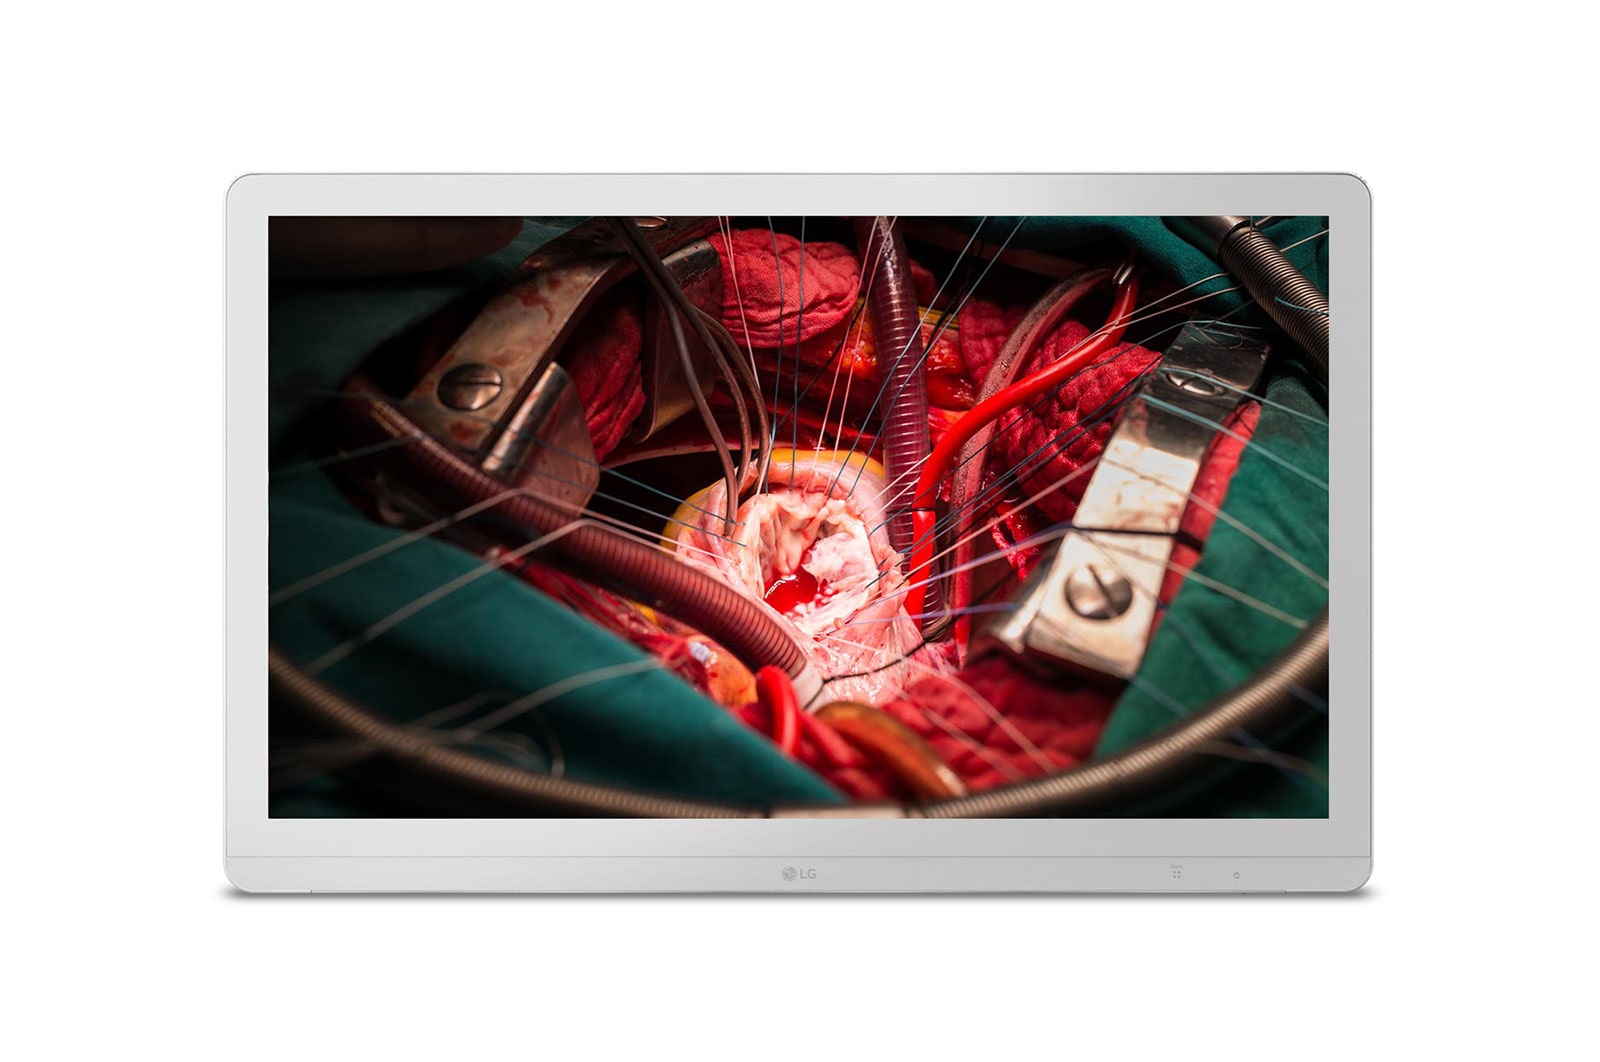 LG 27” Monitor Bedah Full HD LG, 27HJ710S-W